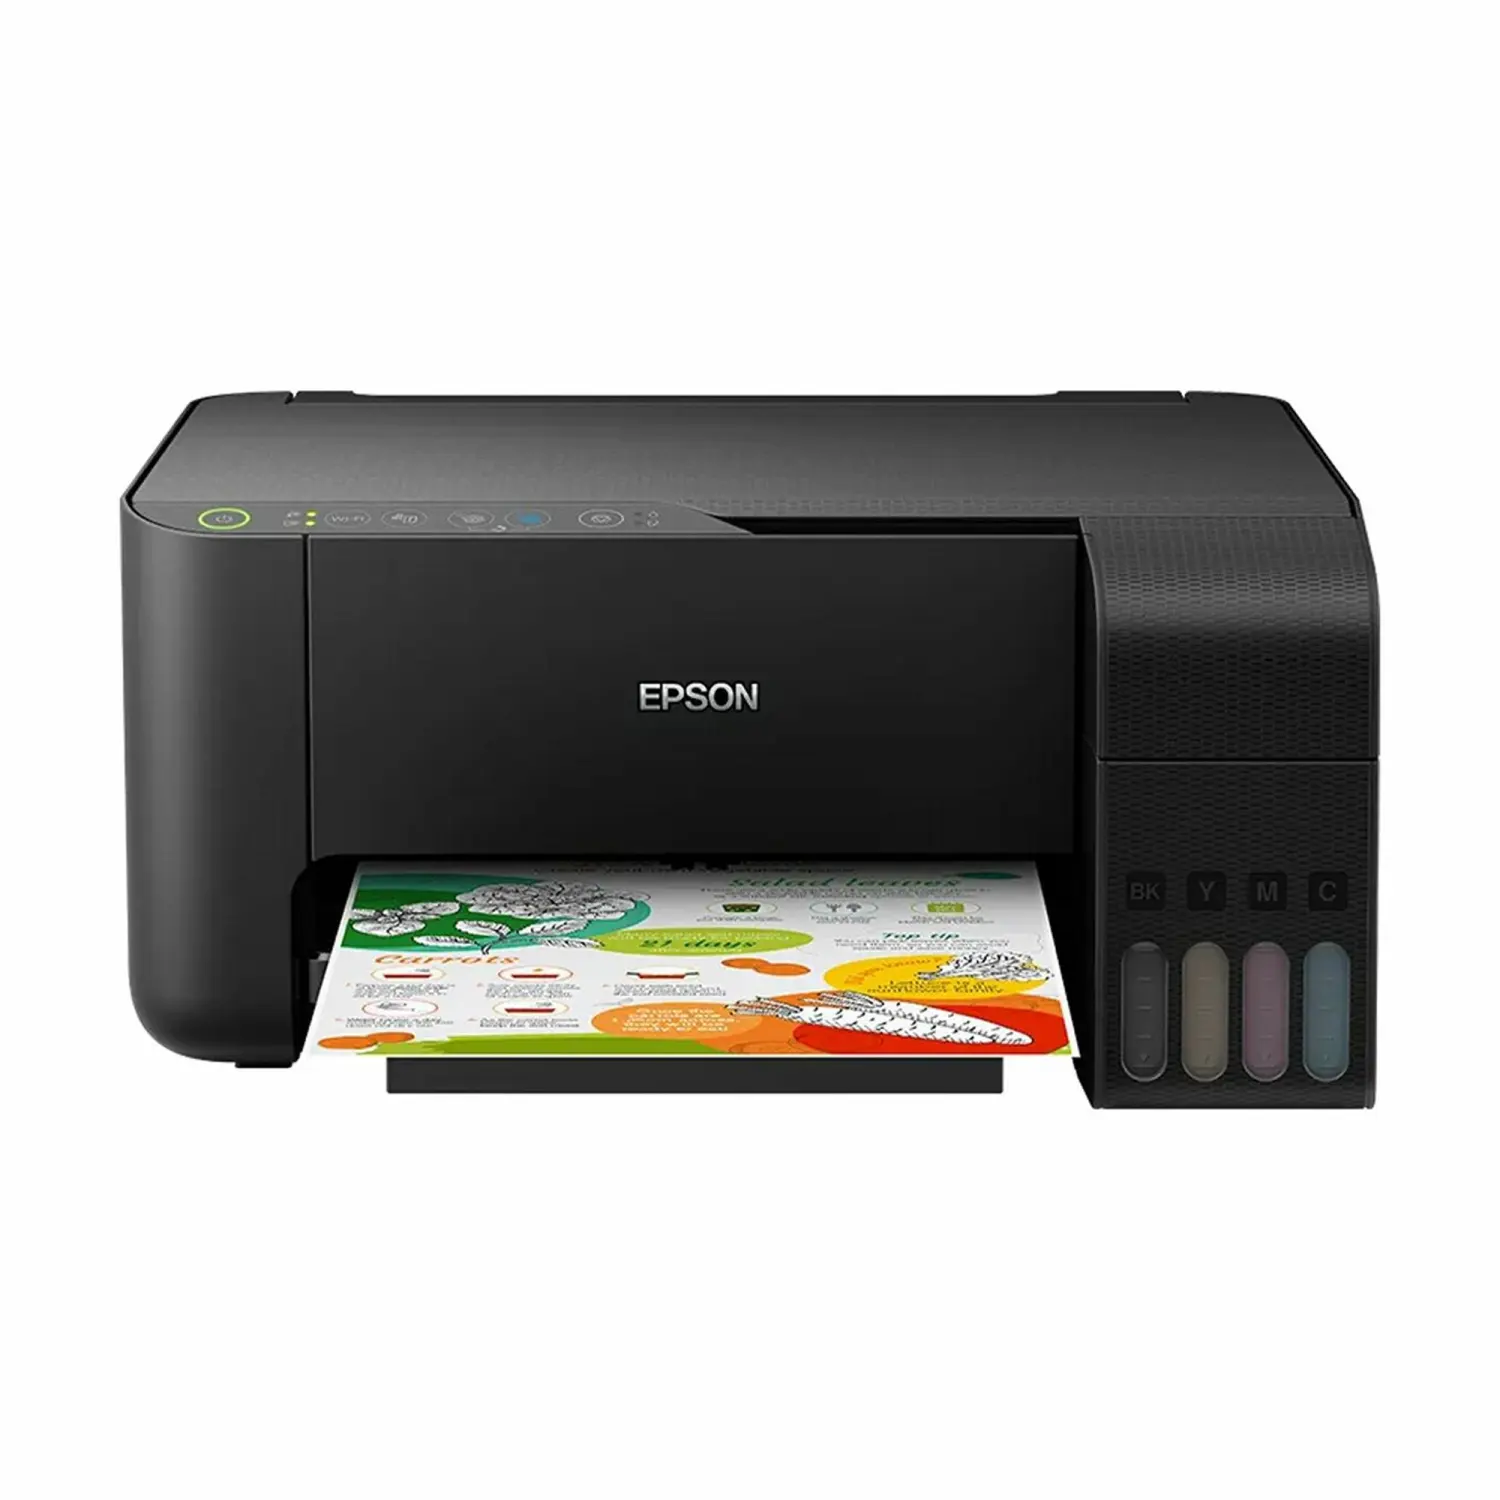 Nagelneu eps L3258/L3256 Tintenstrahldrucker A4 Farbe All-In-One Drucken-Scan-Kopieren-Drucker mit W-Fi Direct